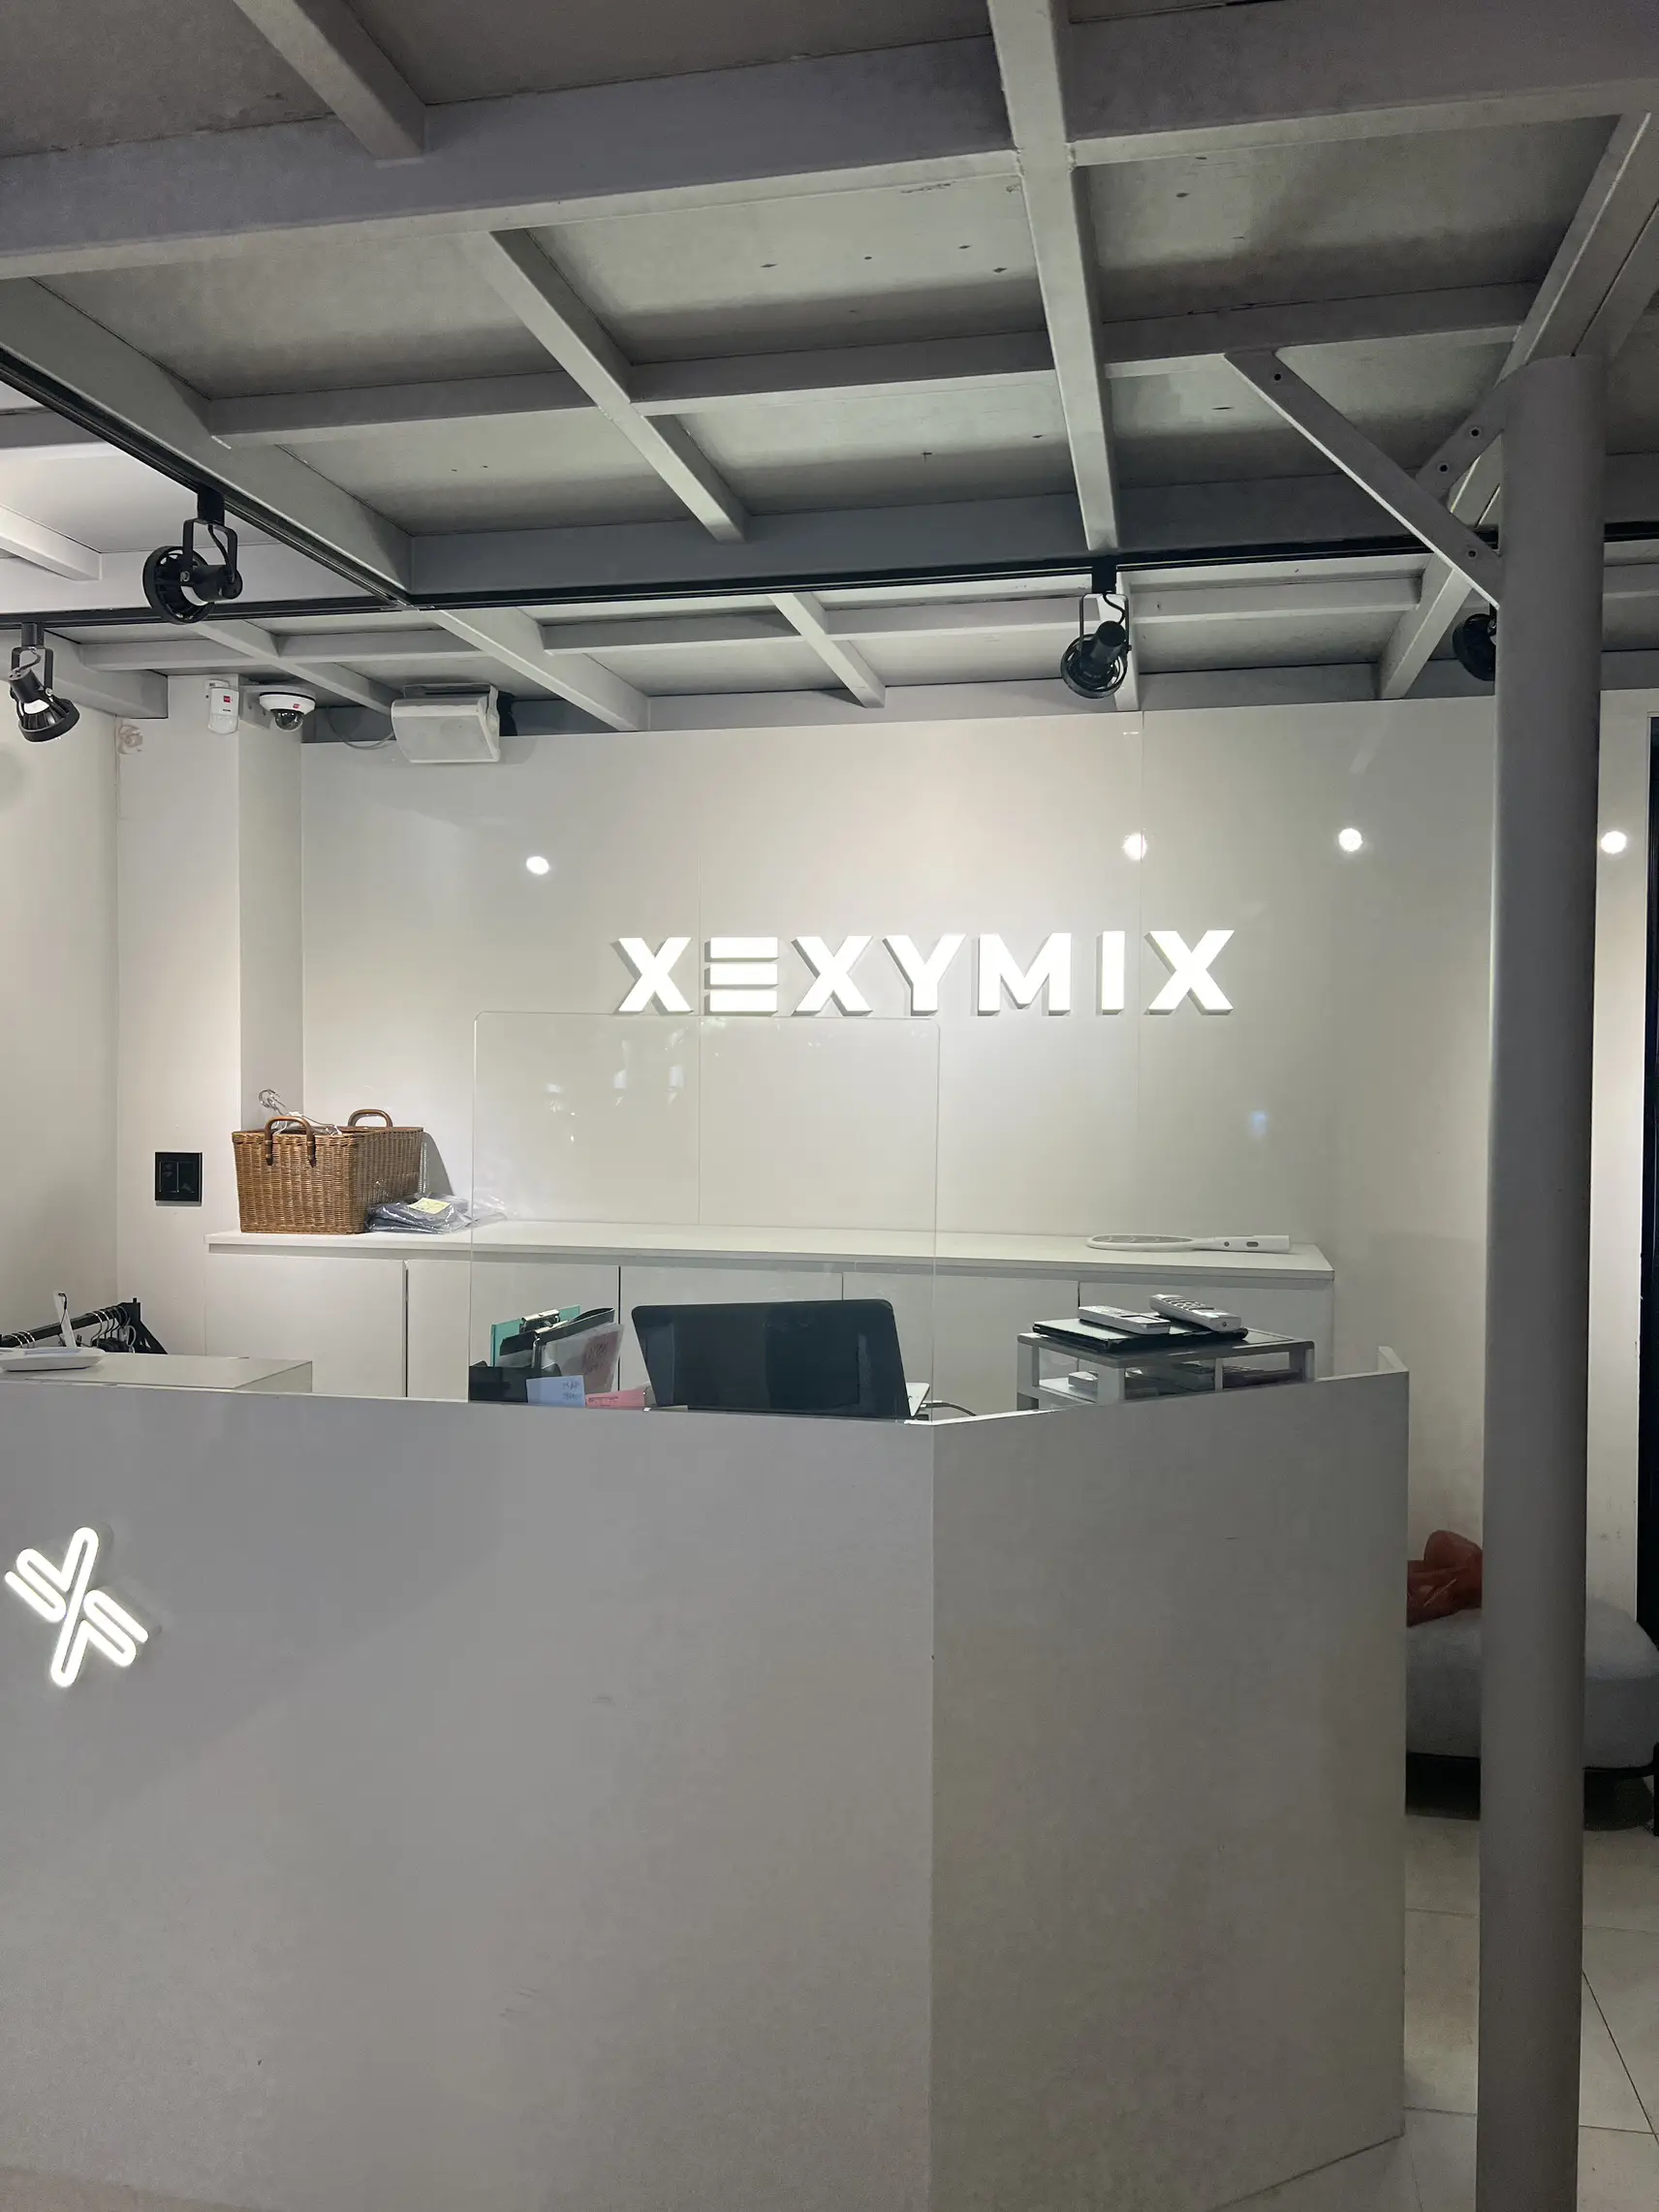 Korean lifestyle brand Andar takes on Xexymix in athleisure market